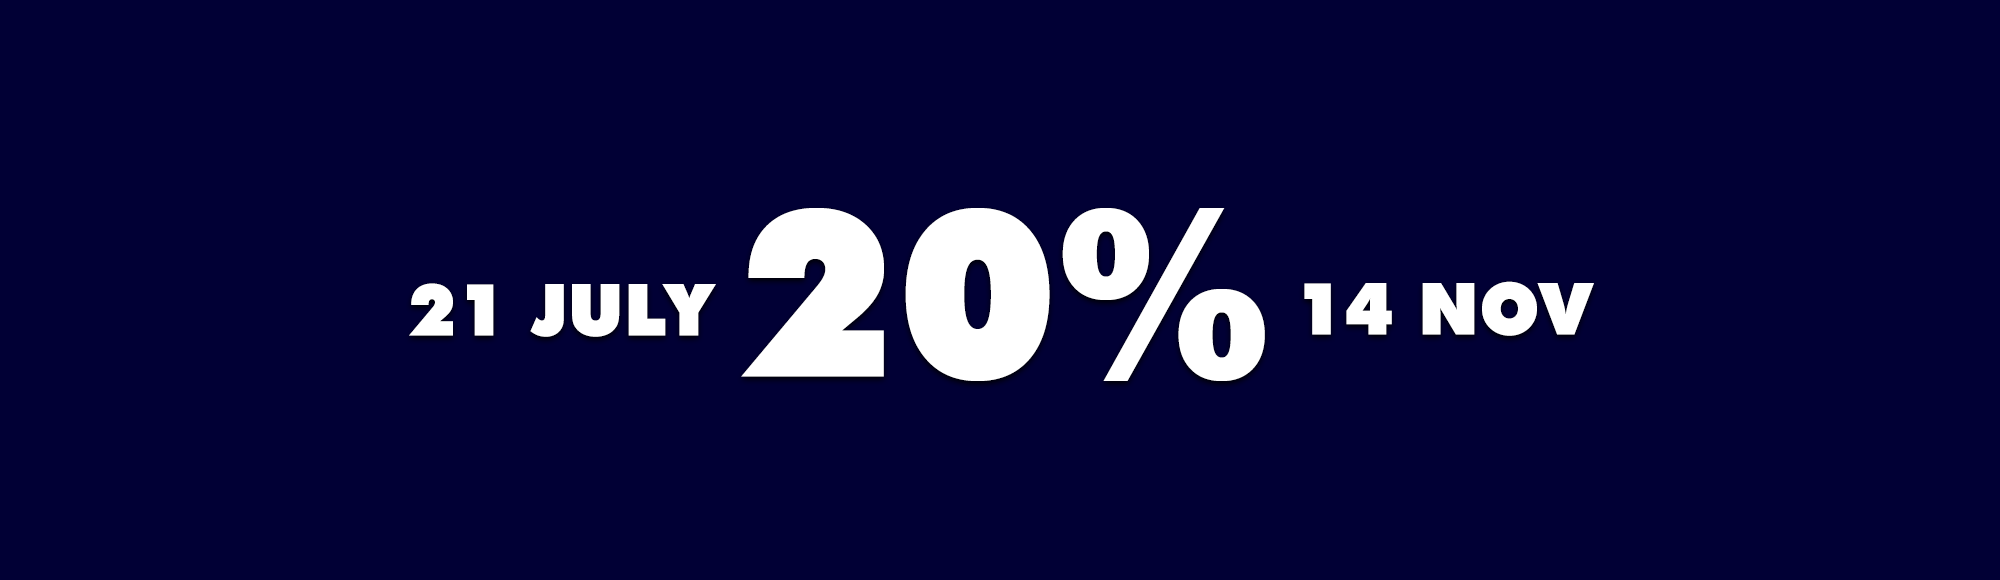 The 20% Milestone